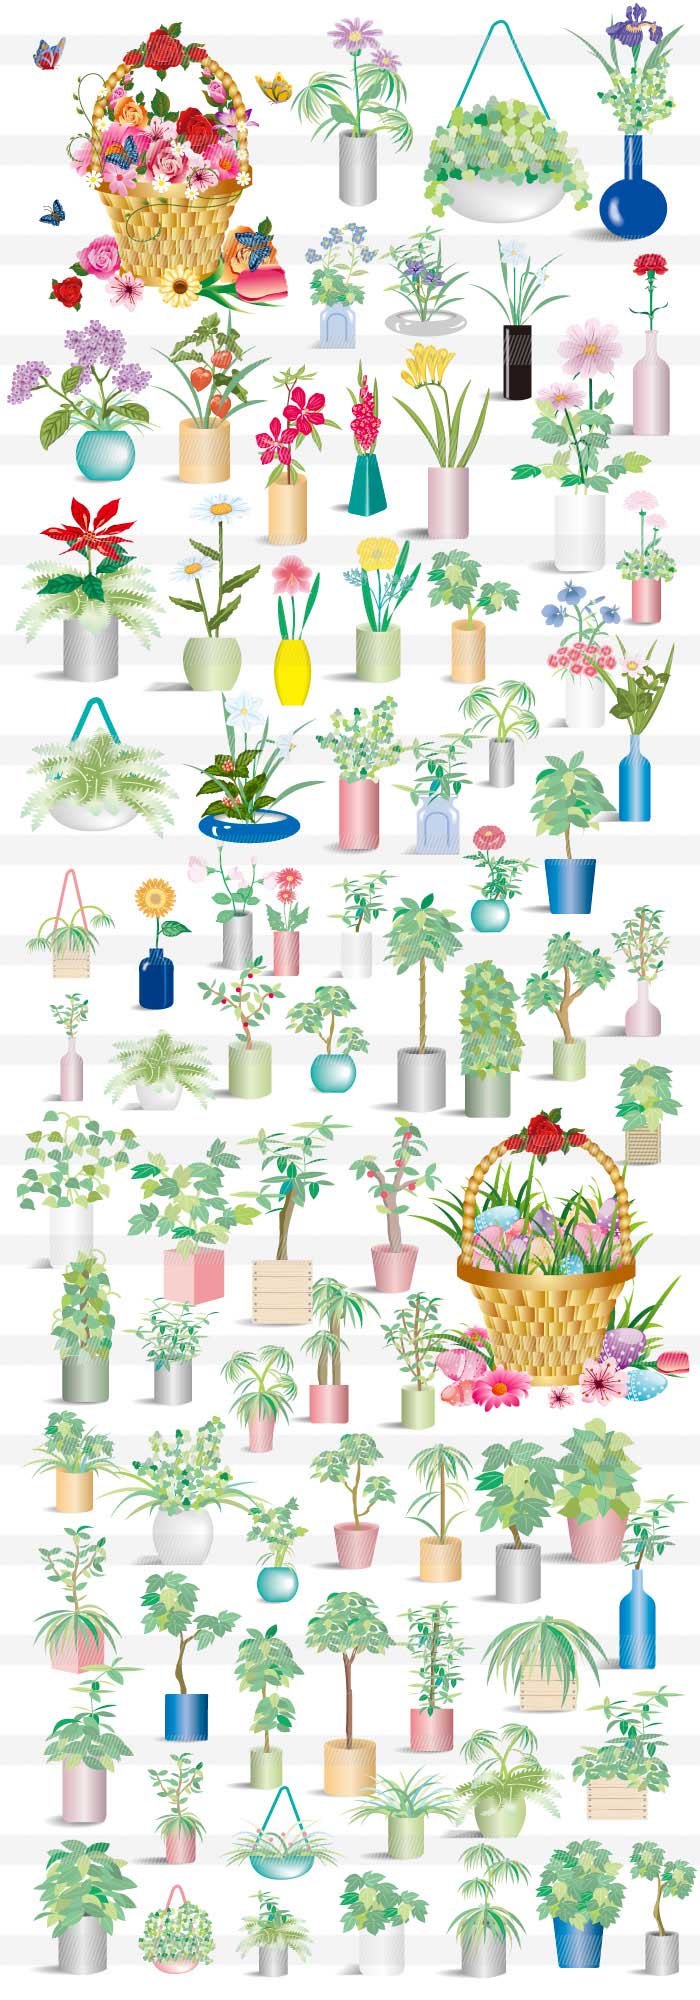 植木鉢と花のイラスト Word Excel Powepointで簡単に使えるイラストと背景素材集